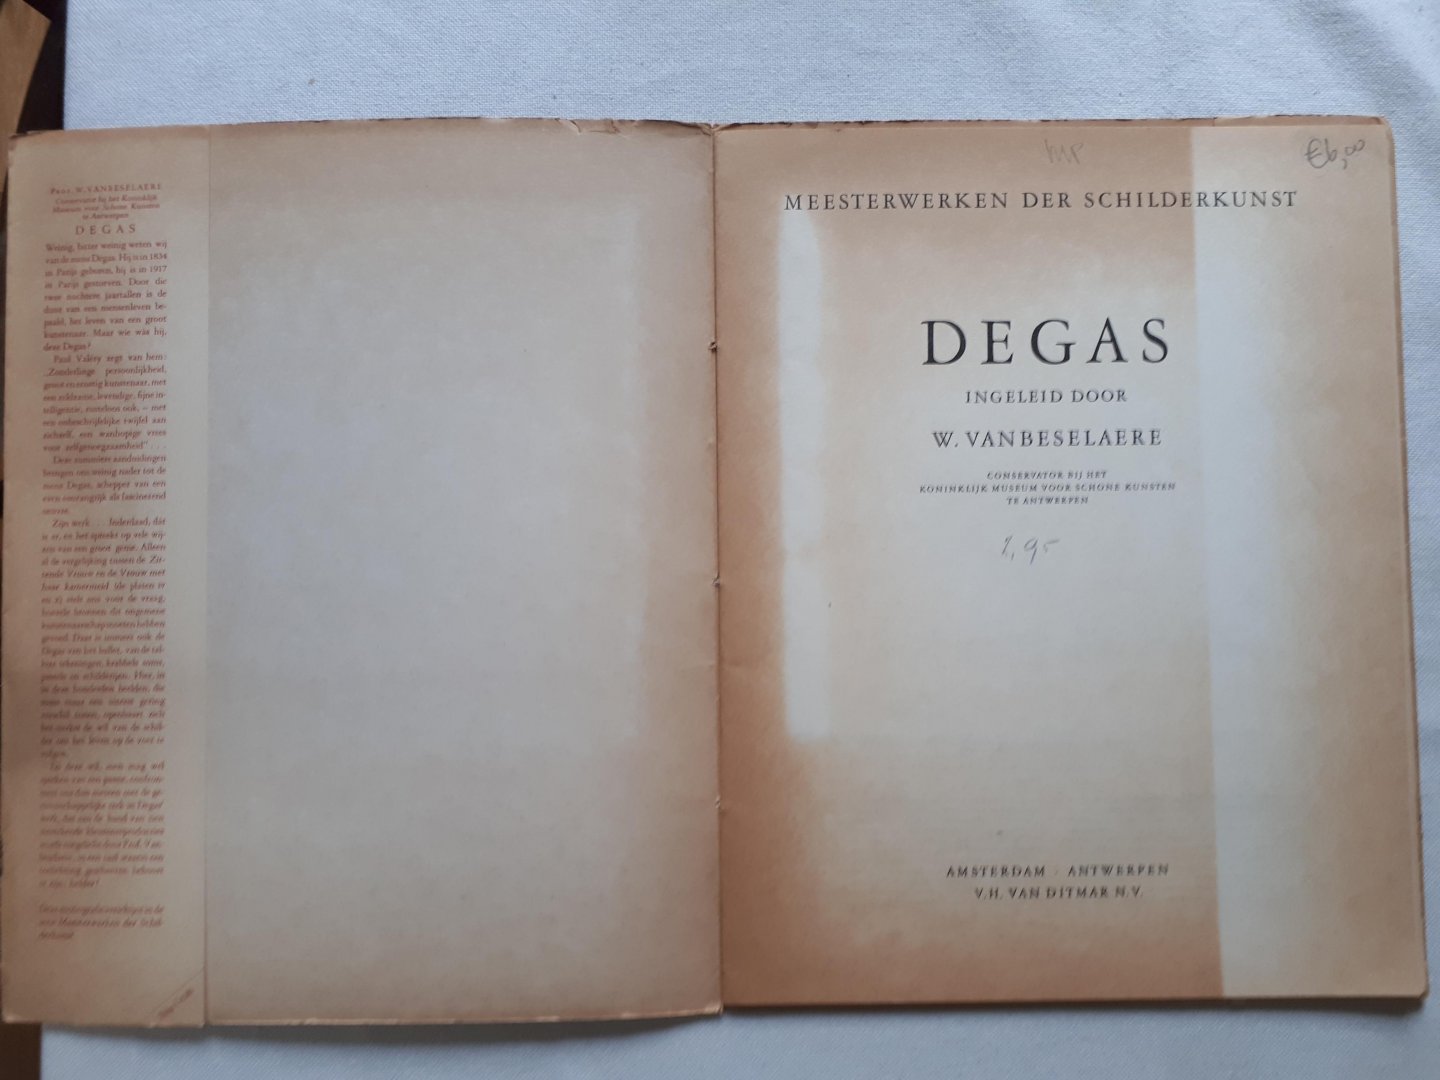 Vanboeselaere, W. - Degas (meesterwerken der schiderkunst)